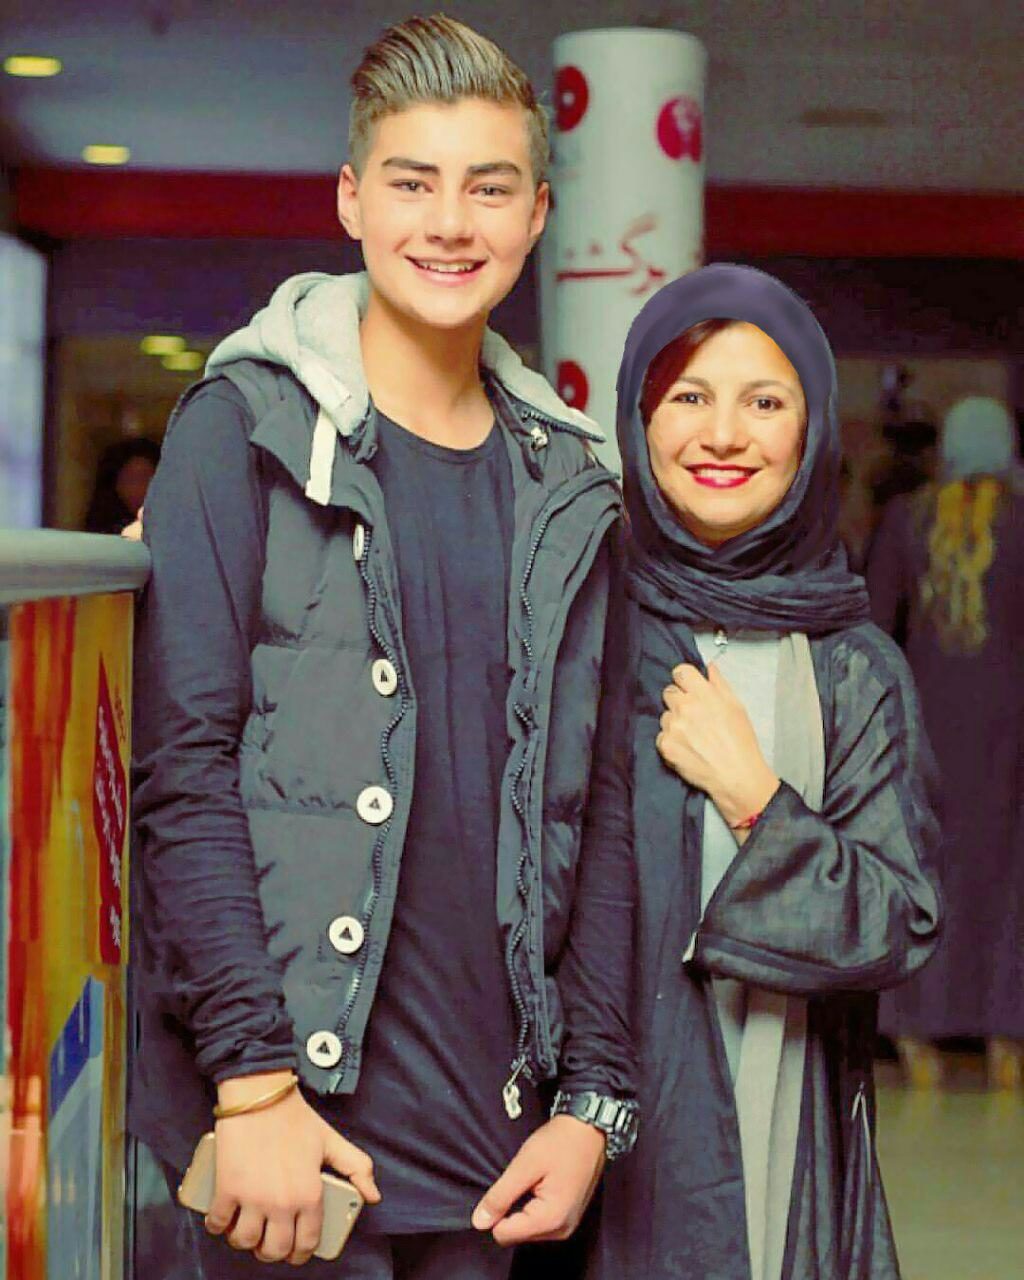 لیلی رشیدی در کنار پسرش در جشنواره امسال +عکس